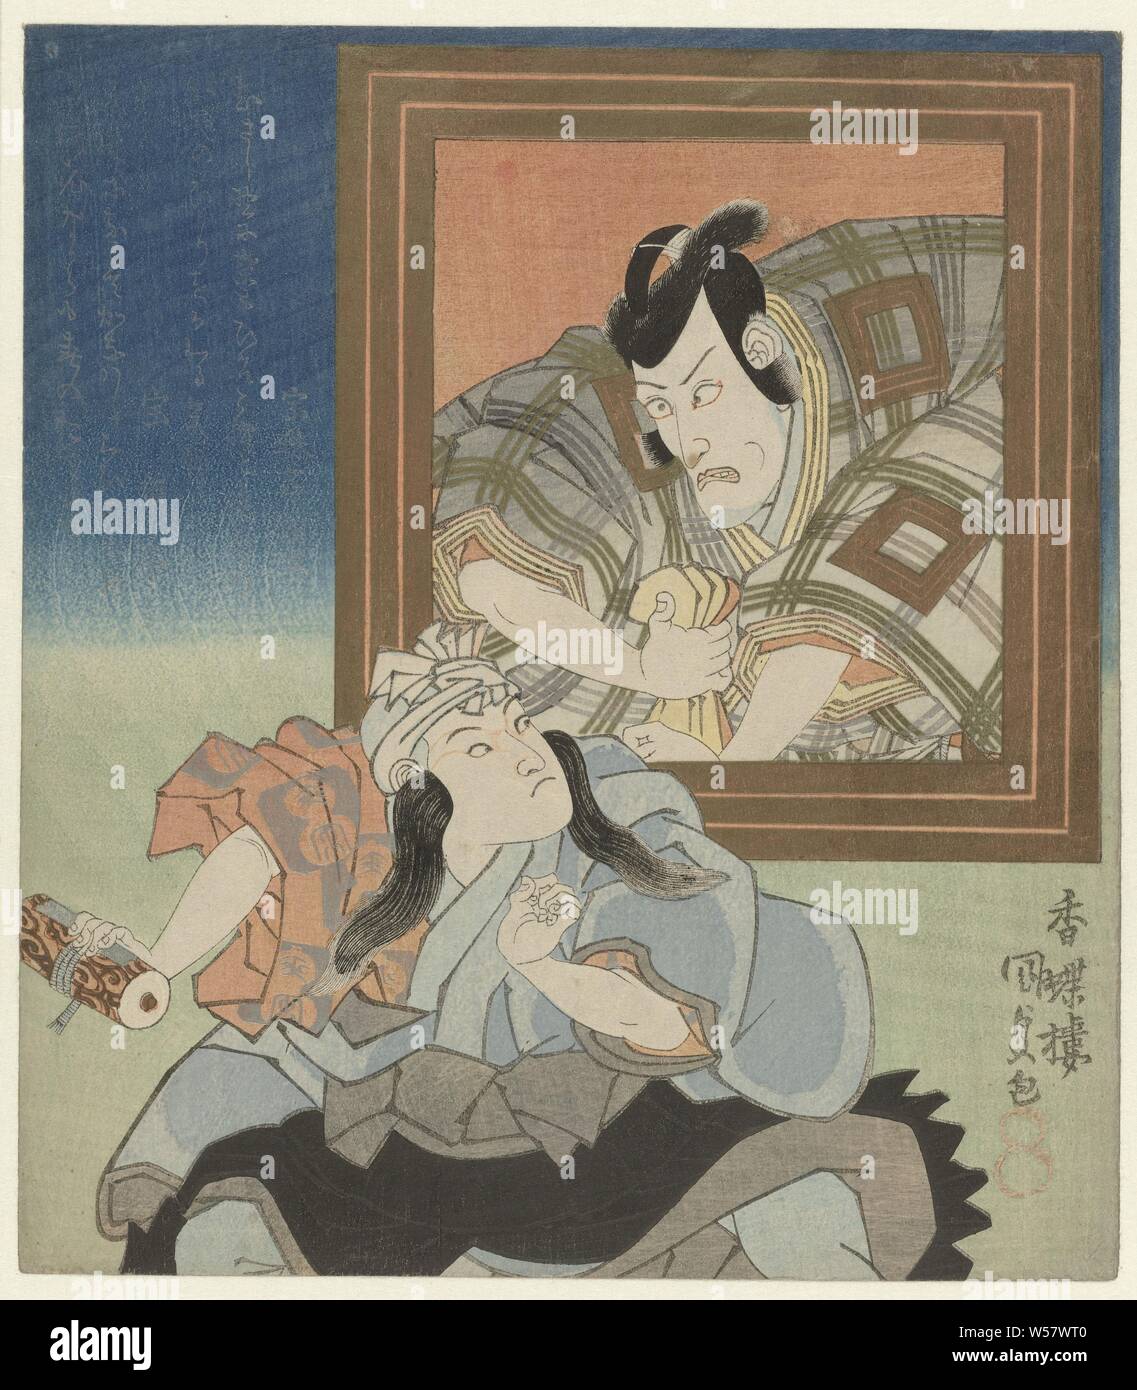 Der junge Schauspieler mit einem Porträt von Ichikawa Danjûrô VII, Aus einer Kartusche, ein Mann sieht einen Jungen mit einer Rolle in der Hand. Der Junge ist die 8-jährige Schauspieler Ichikawa Ebizô (1823-54), in der Rolle des Kobôzu Donguri. Sein Vater, der Schauspieler Ichikawa Danjûrô VII (1791-1859), ist in der kartusche dargestellt. Szene aus dem Spiel keine tsuwamono Ichiyoraifuku Shibuya, an der Kawarazaki Theater in Edo durchgeführt (Tokio) im Jahr 1830. Mit zwei Gedichte., Kunisada (I), Utagawa (auf Objekt erwähnt), Japan, 1831, Papier, Polieren, H 212 mm x B 186 mm Stockfoto